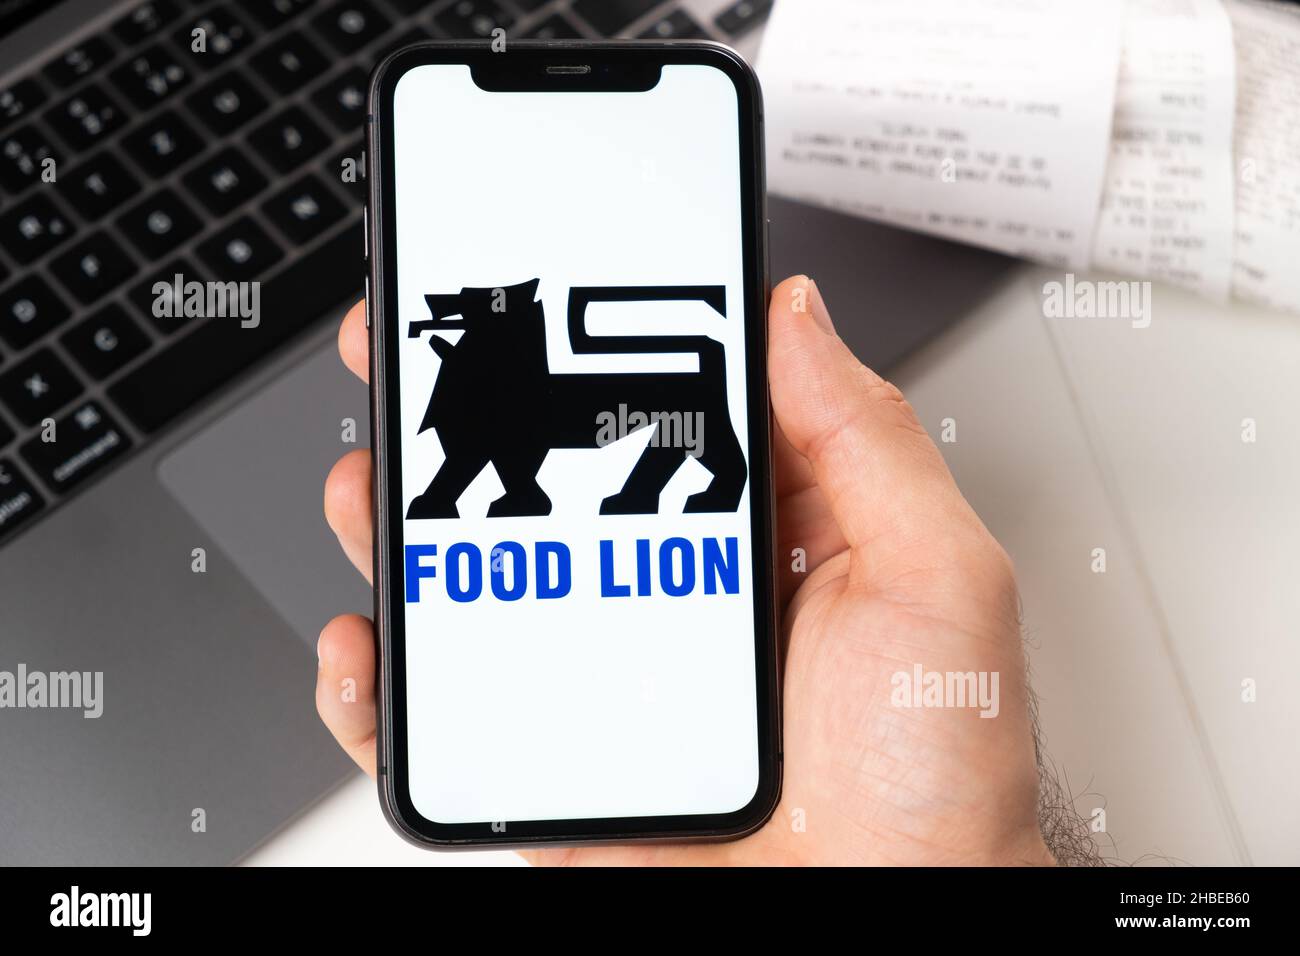 Application Food Lion d'un supermarché et d'une épicerie dans un smartphone.Un homme tient un smartphone avec une application pour faire du shopping et un ordinateur portable en arrière-plan.Novembre 2021, San Francisco, États-Unis Banque D'Images